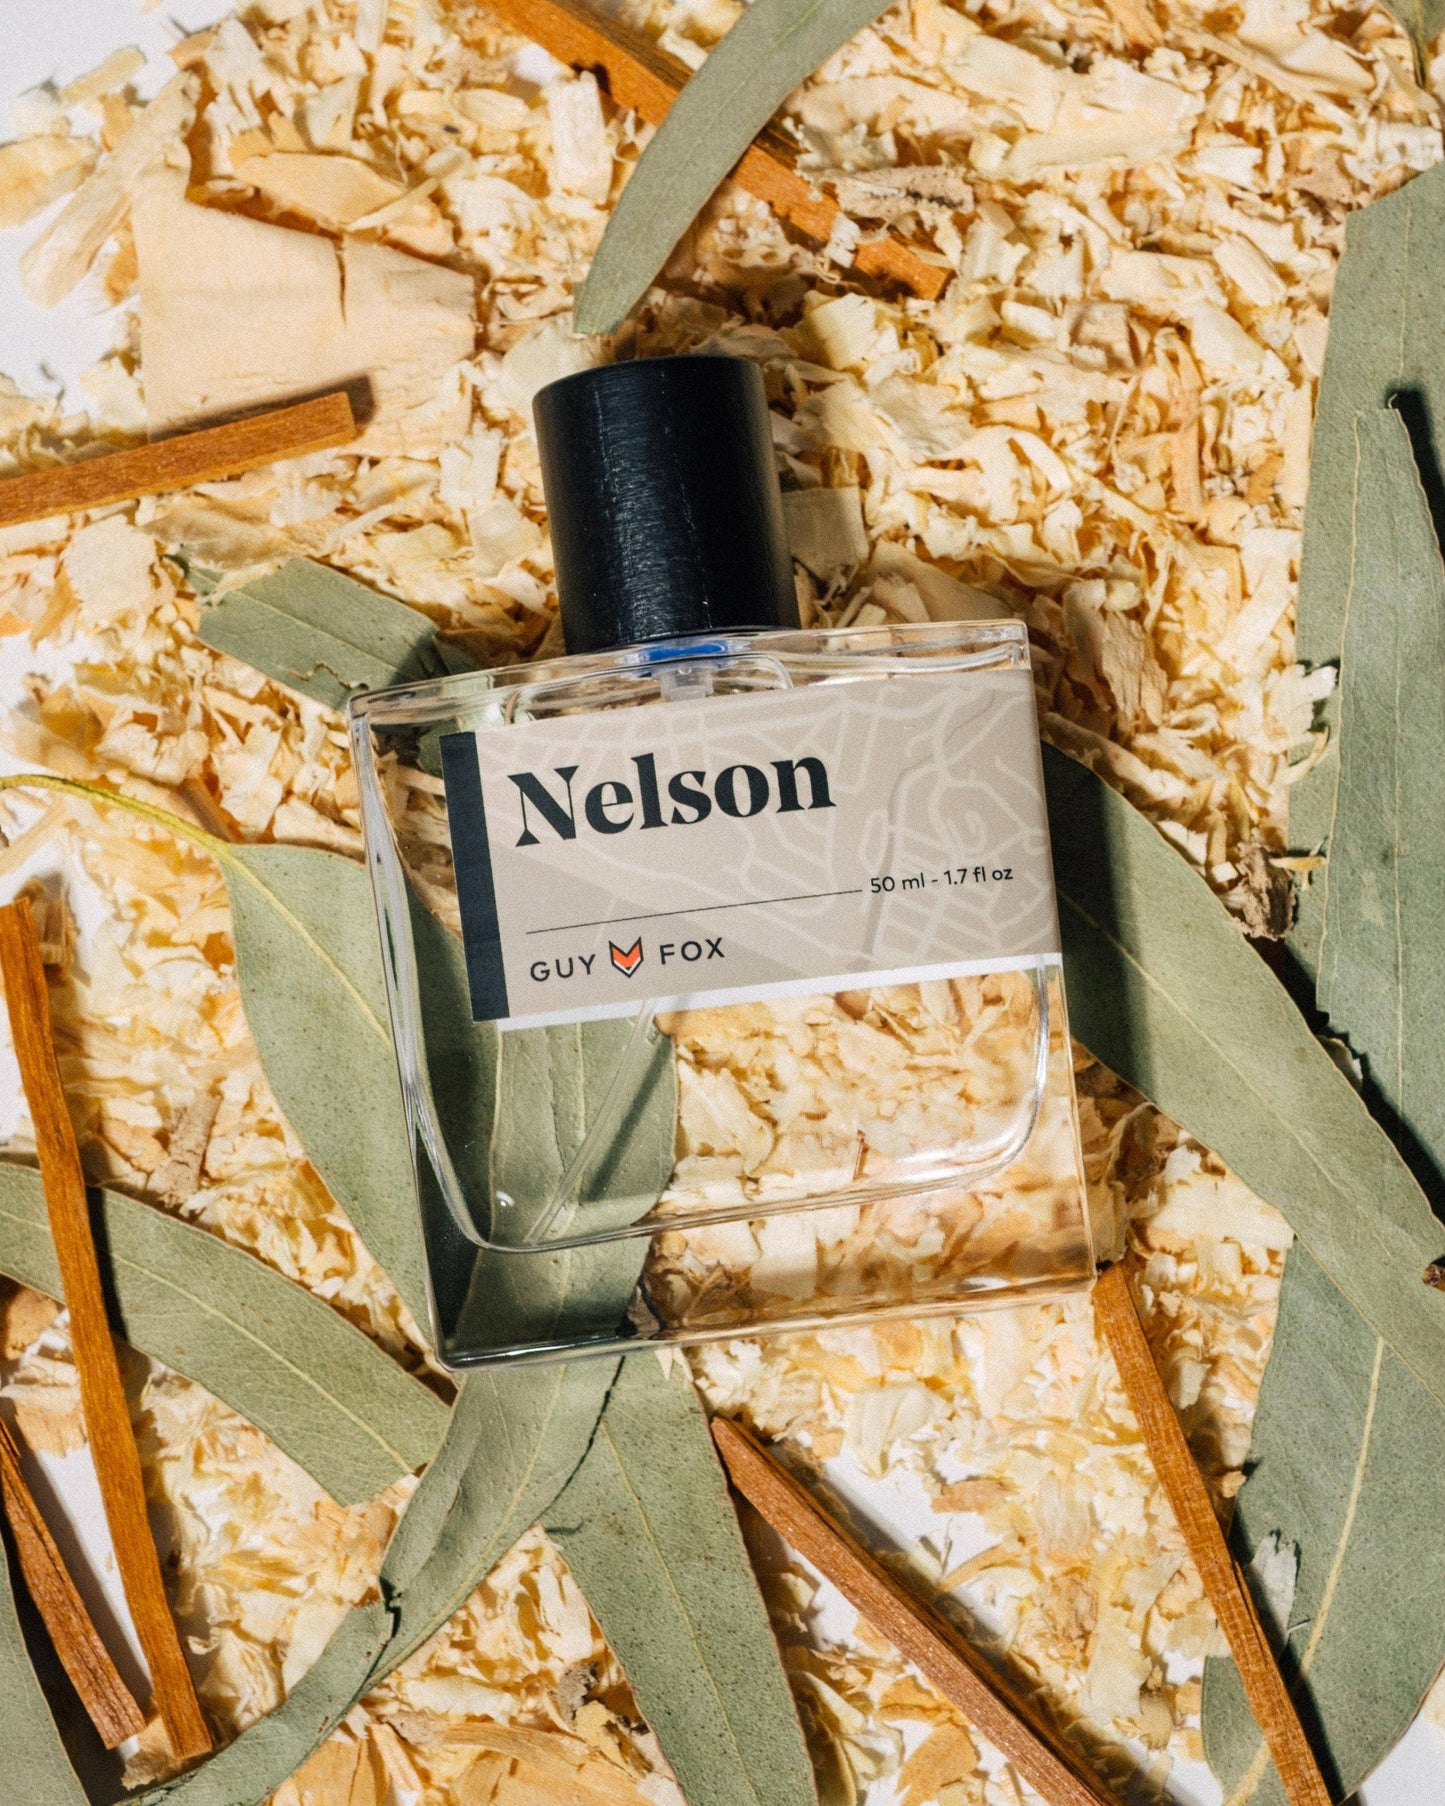 Nelson - Men's Cologne - Eucalyptus, Sandalwood, Cedar